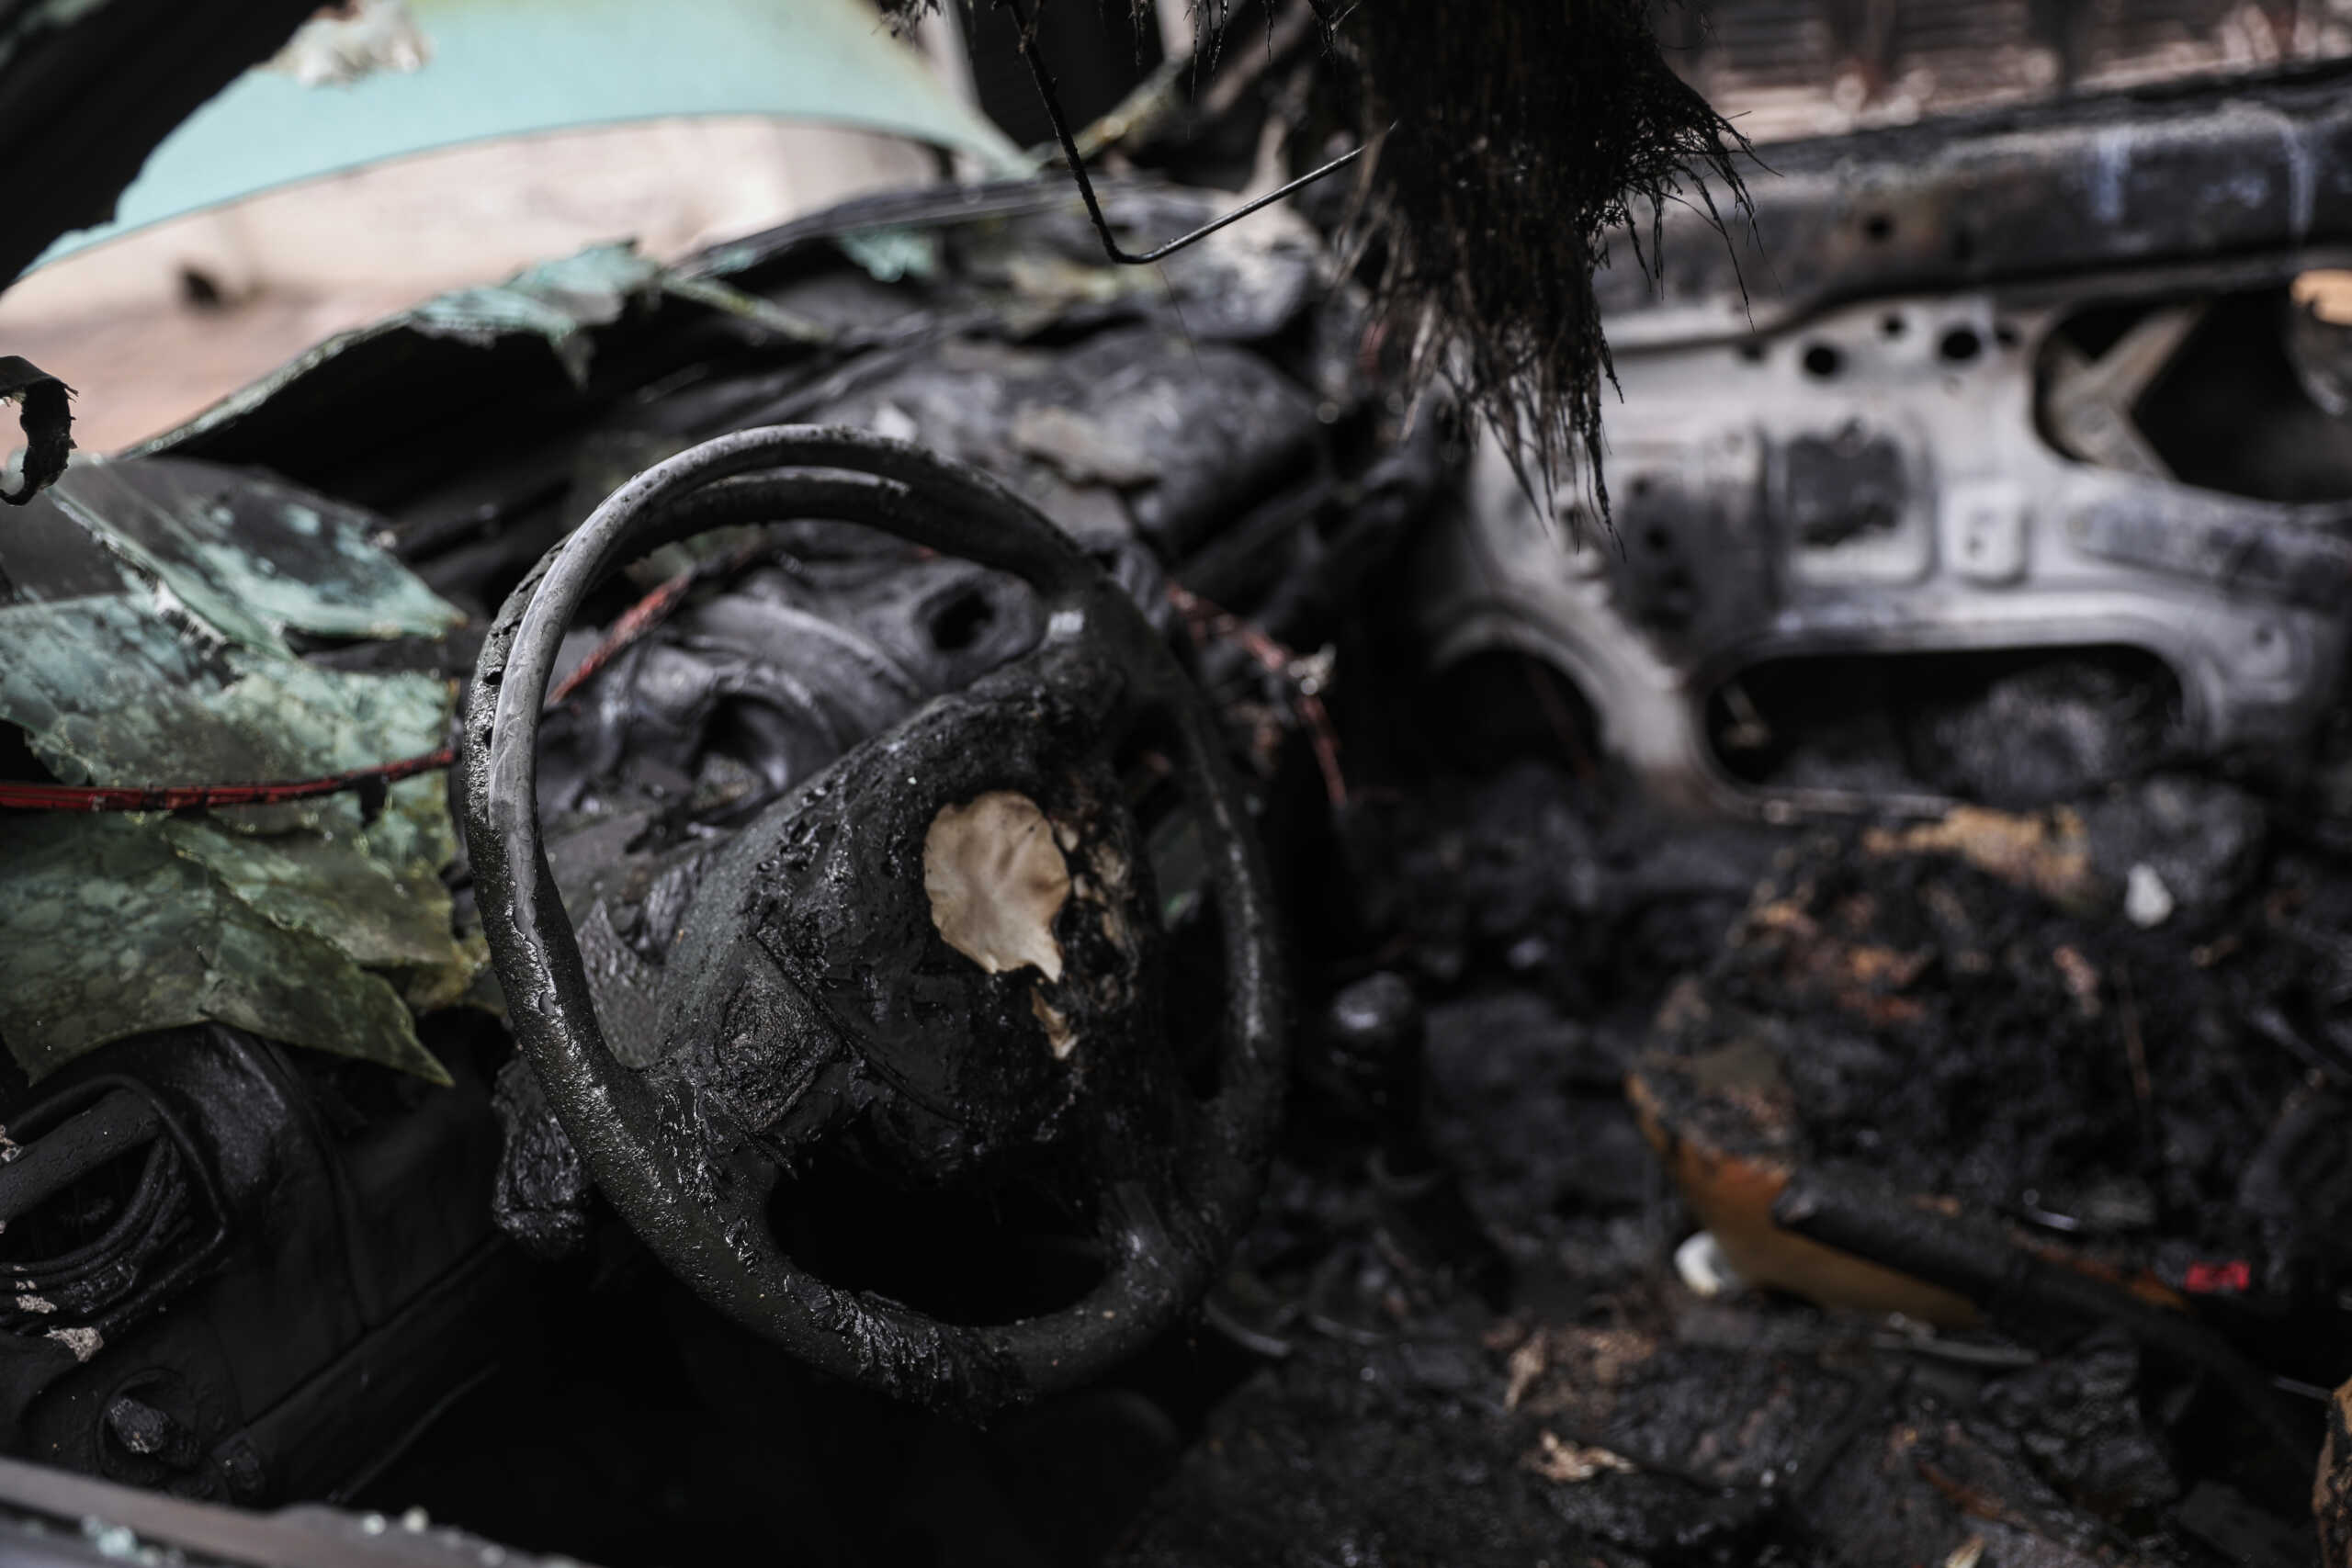 Βόλος: Απανθρακώθηκε οδηγός από φωτιά σε αυτοκίνητο – Φρικτό τροχαίο με το όχημα να πέφτει στο κενό από γέφυρα